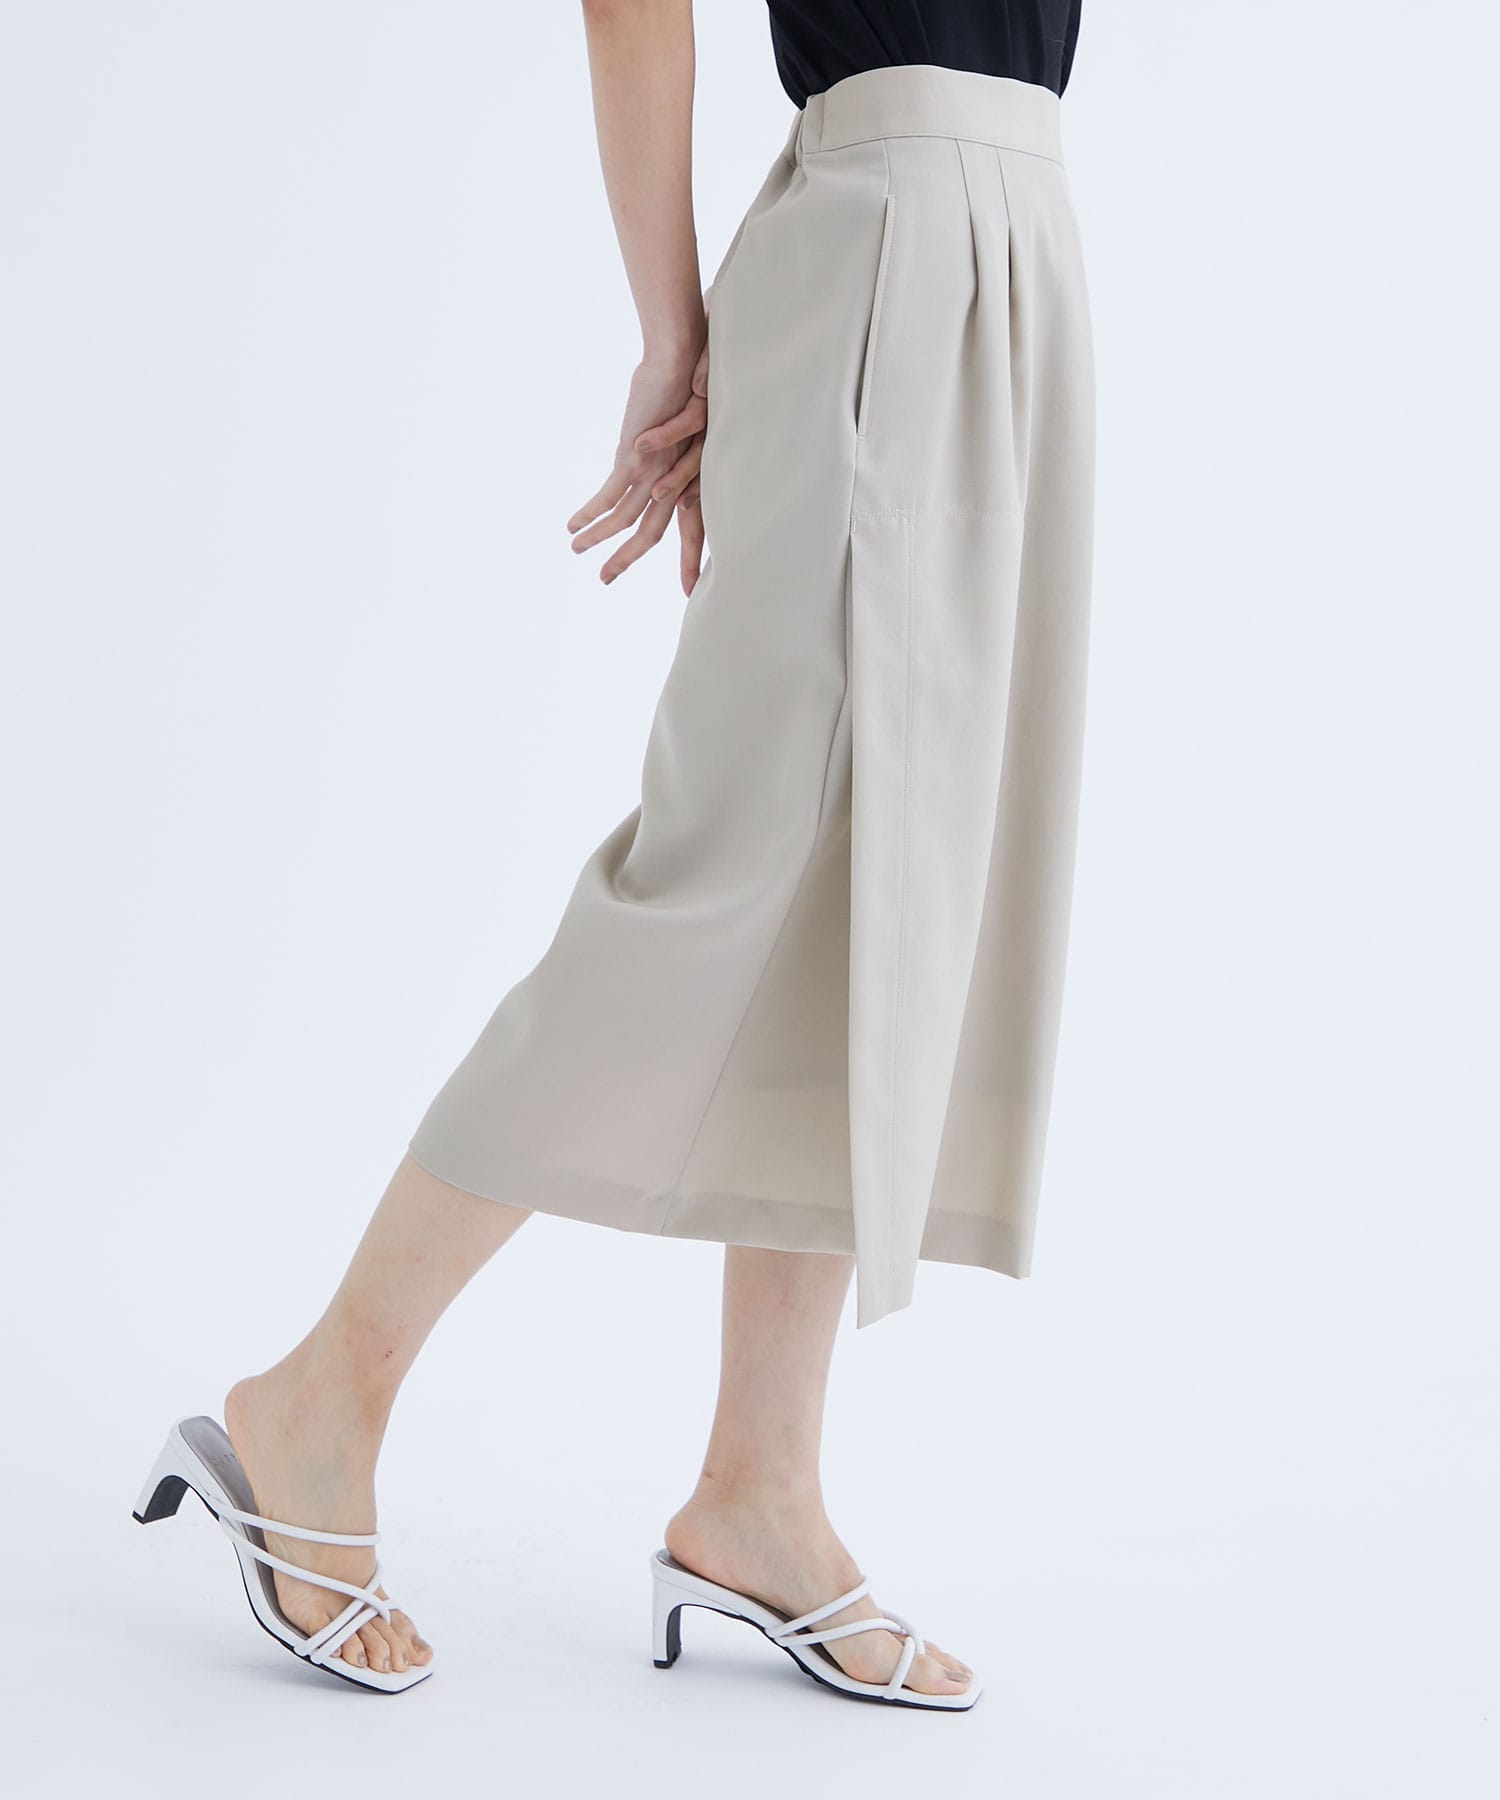 easy slim skirt THE TOKYO